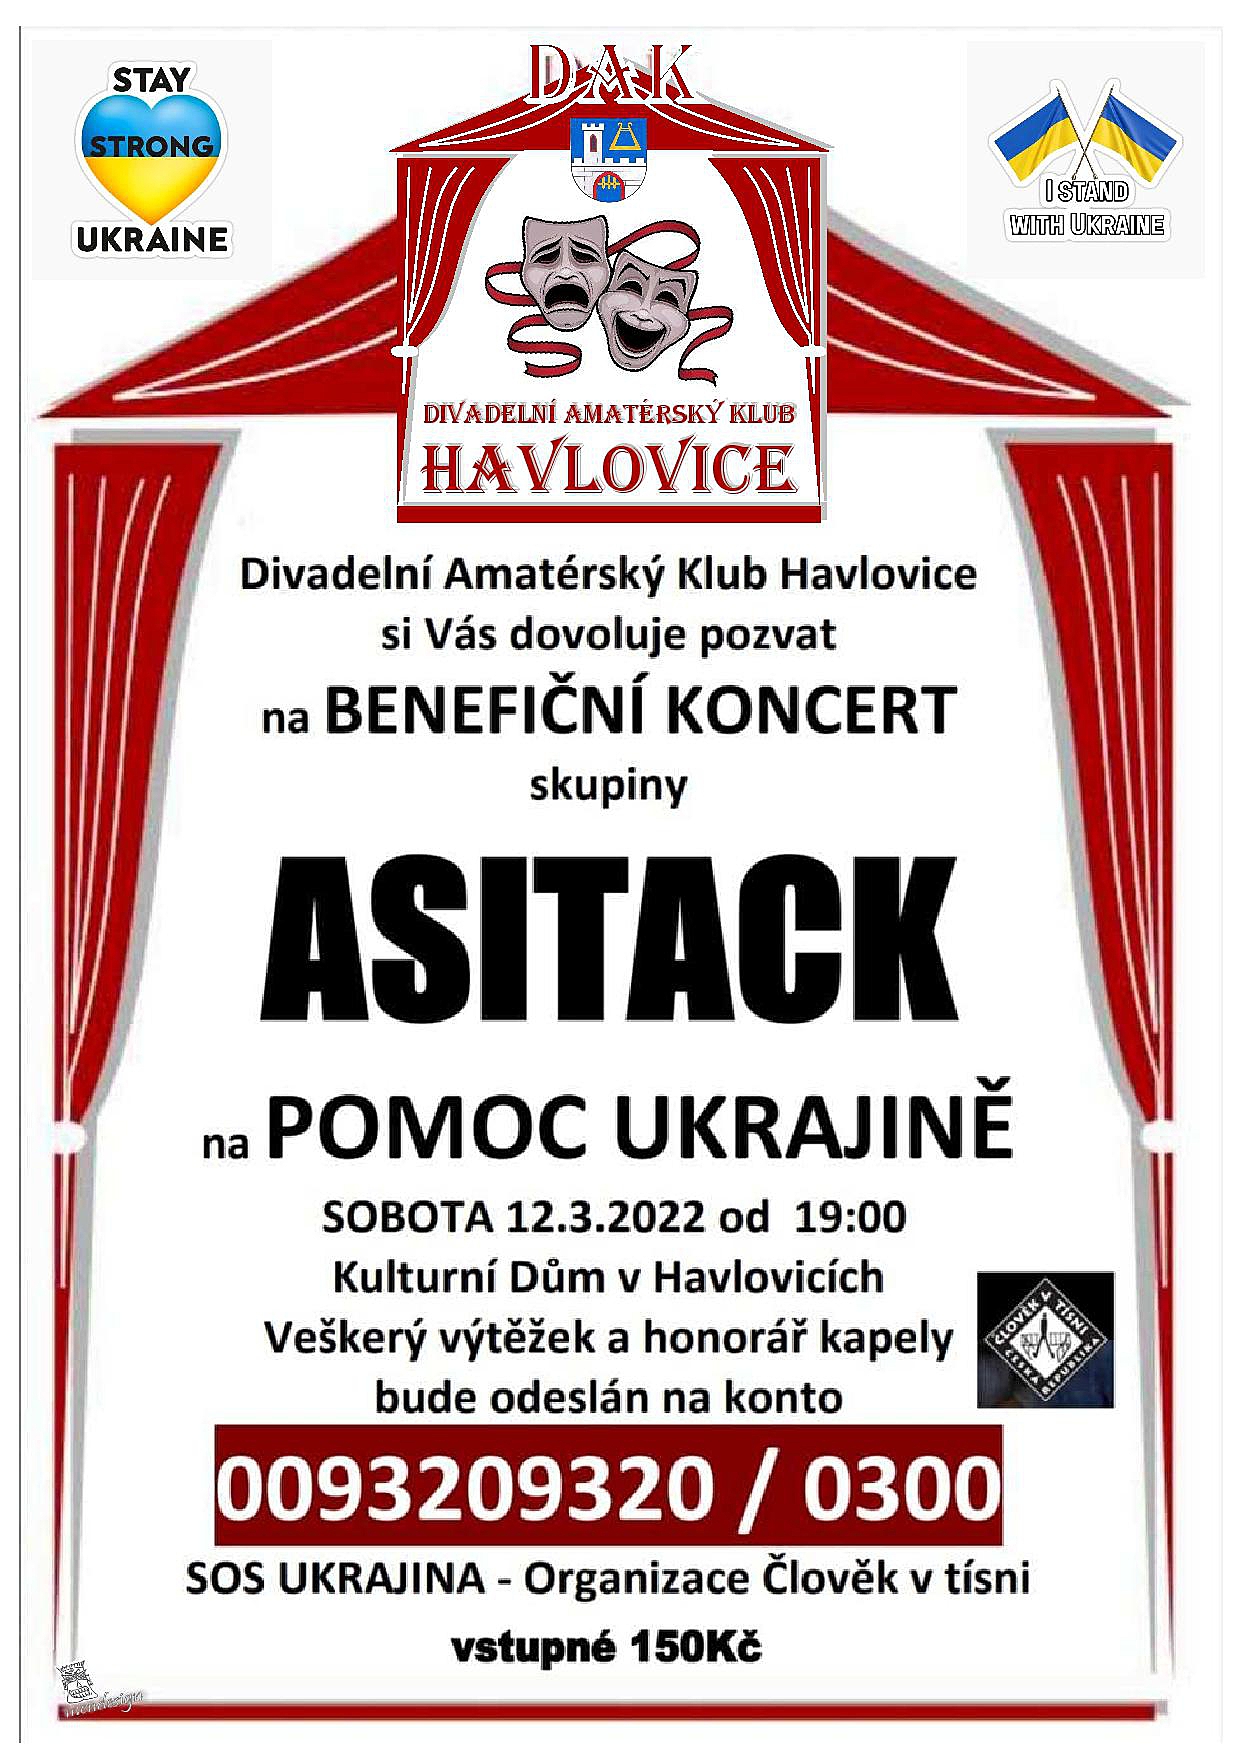 Benefiční koncert pro Ukrajinu